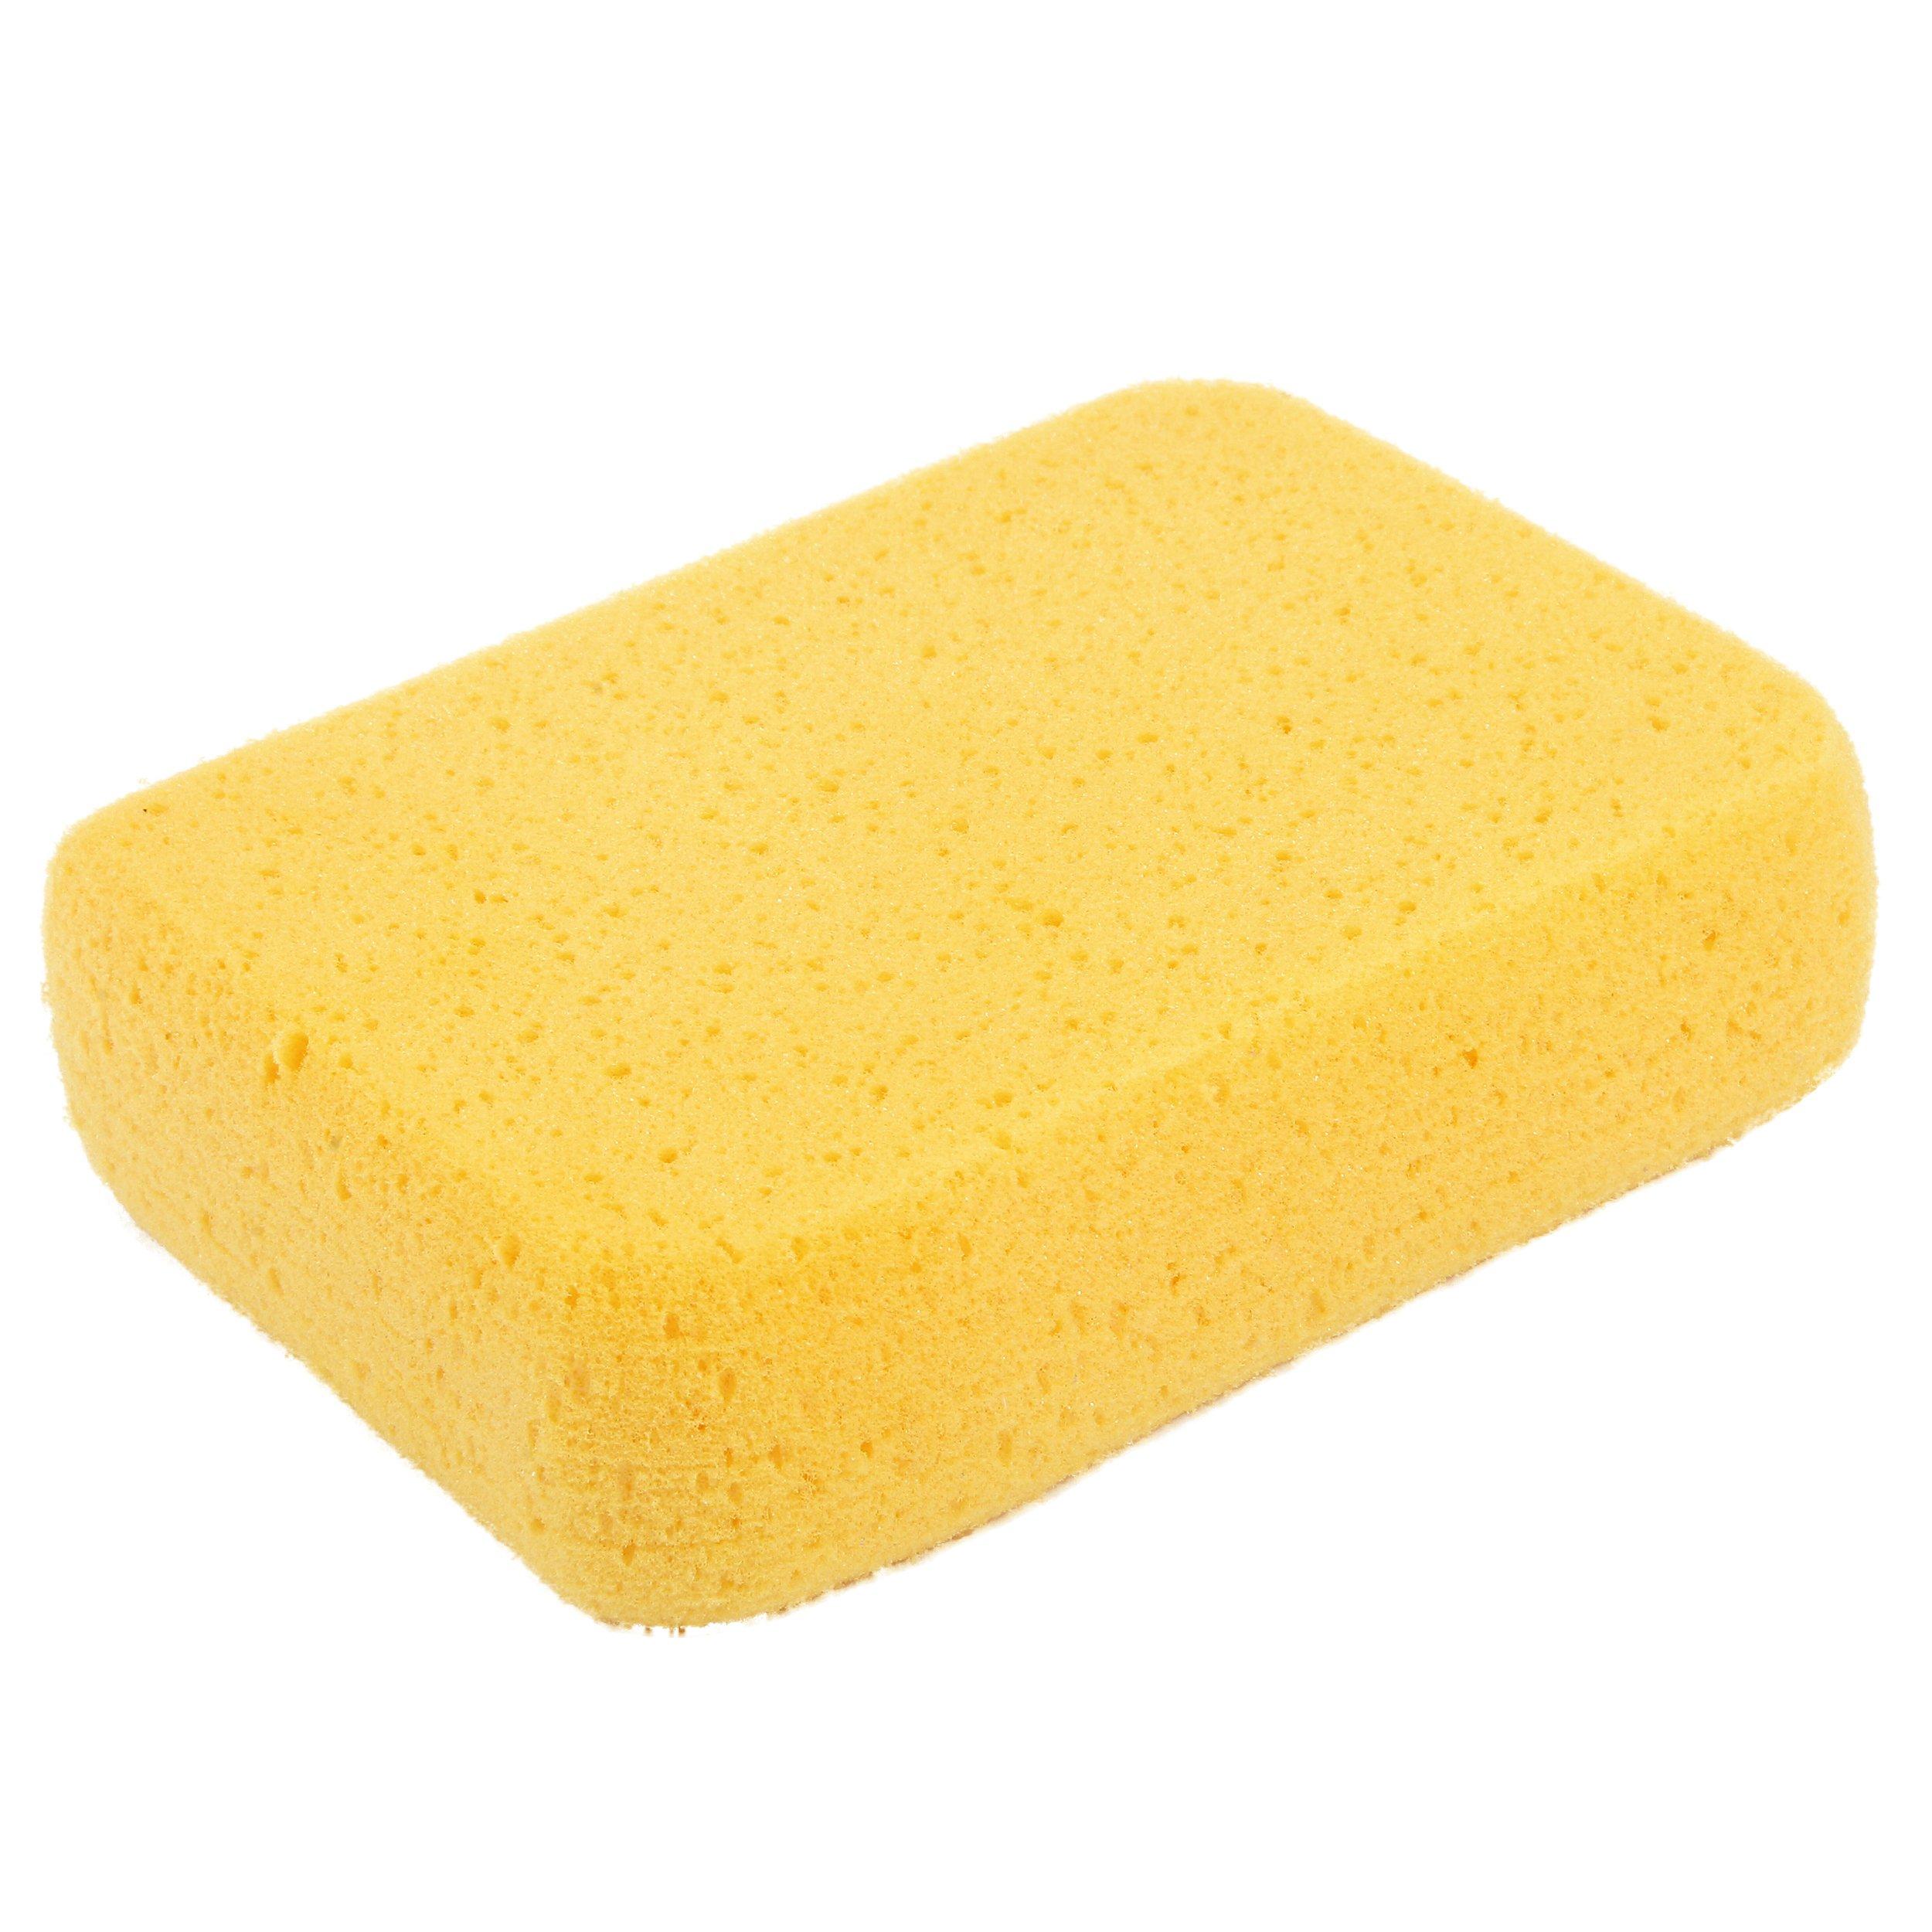 Goldblatt Grout Sponge